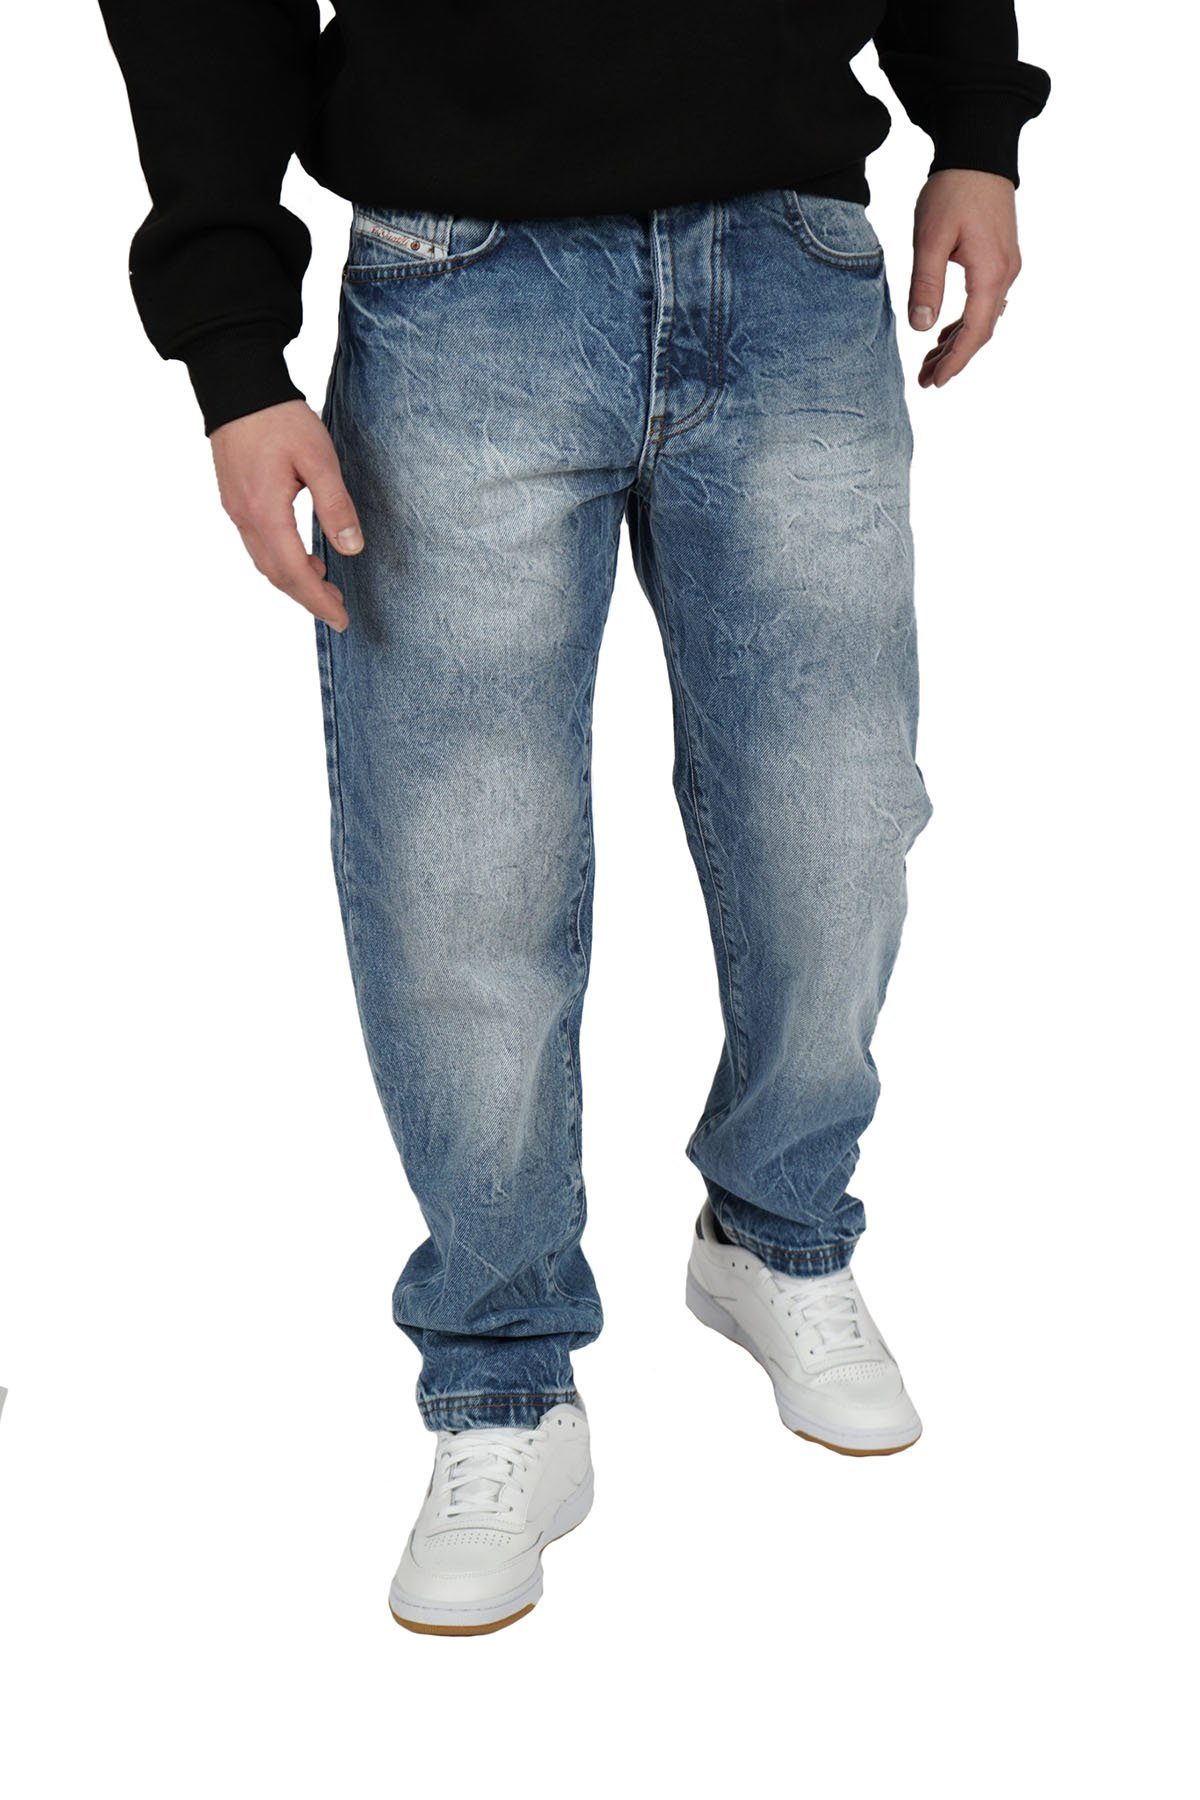 PICALDI Jeans 5-Pocket-Jeans Zicco 472, klassischer Leder-Brandlogo-Patch  mit aufgesetztem Metal-Batch am Bund